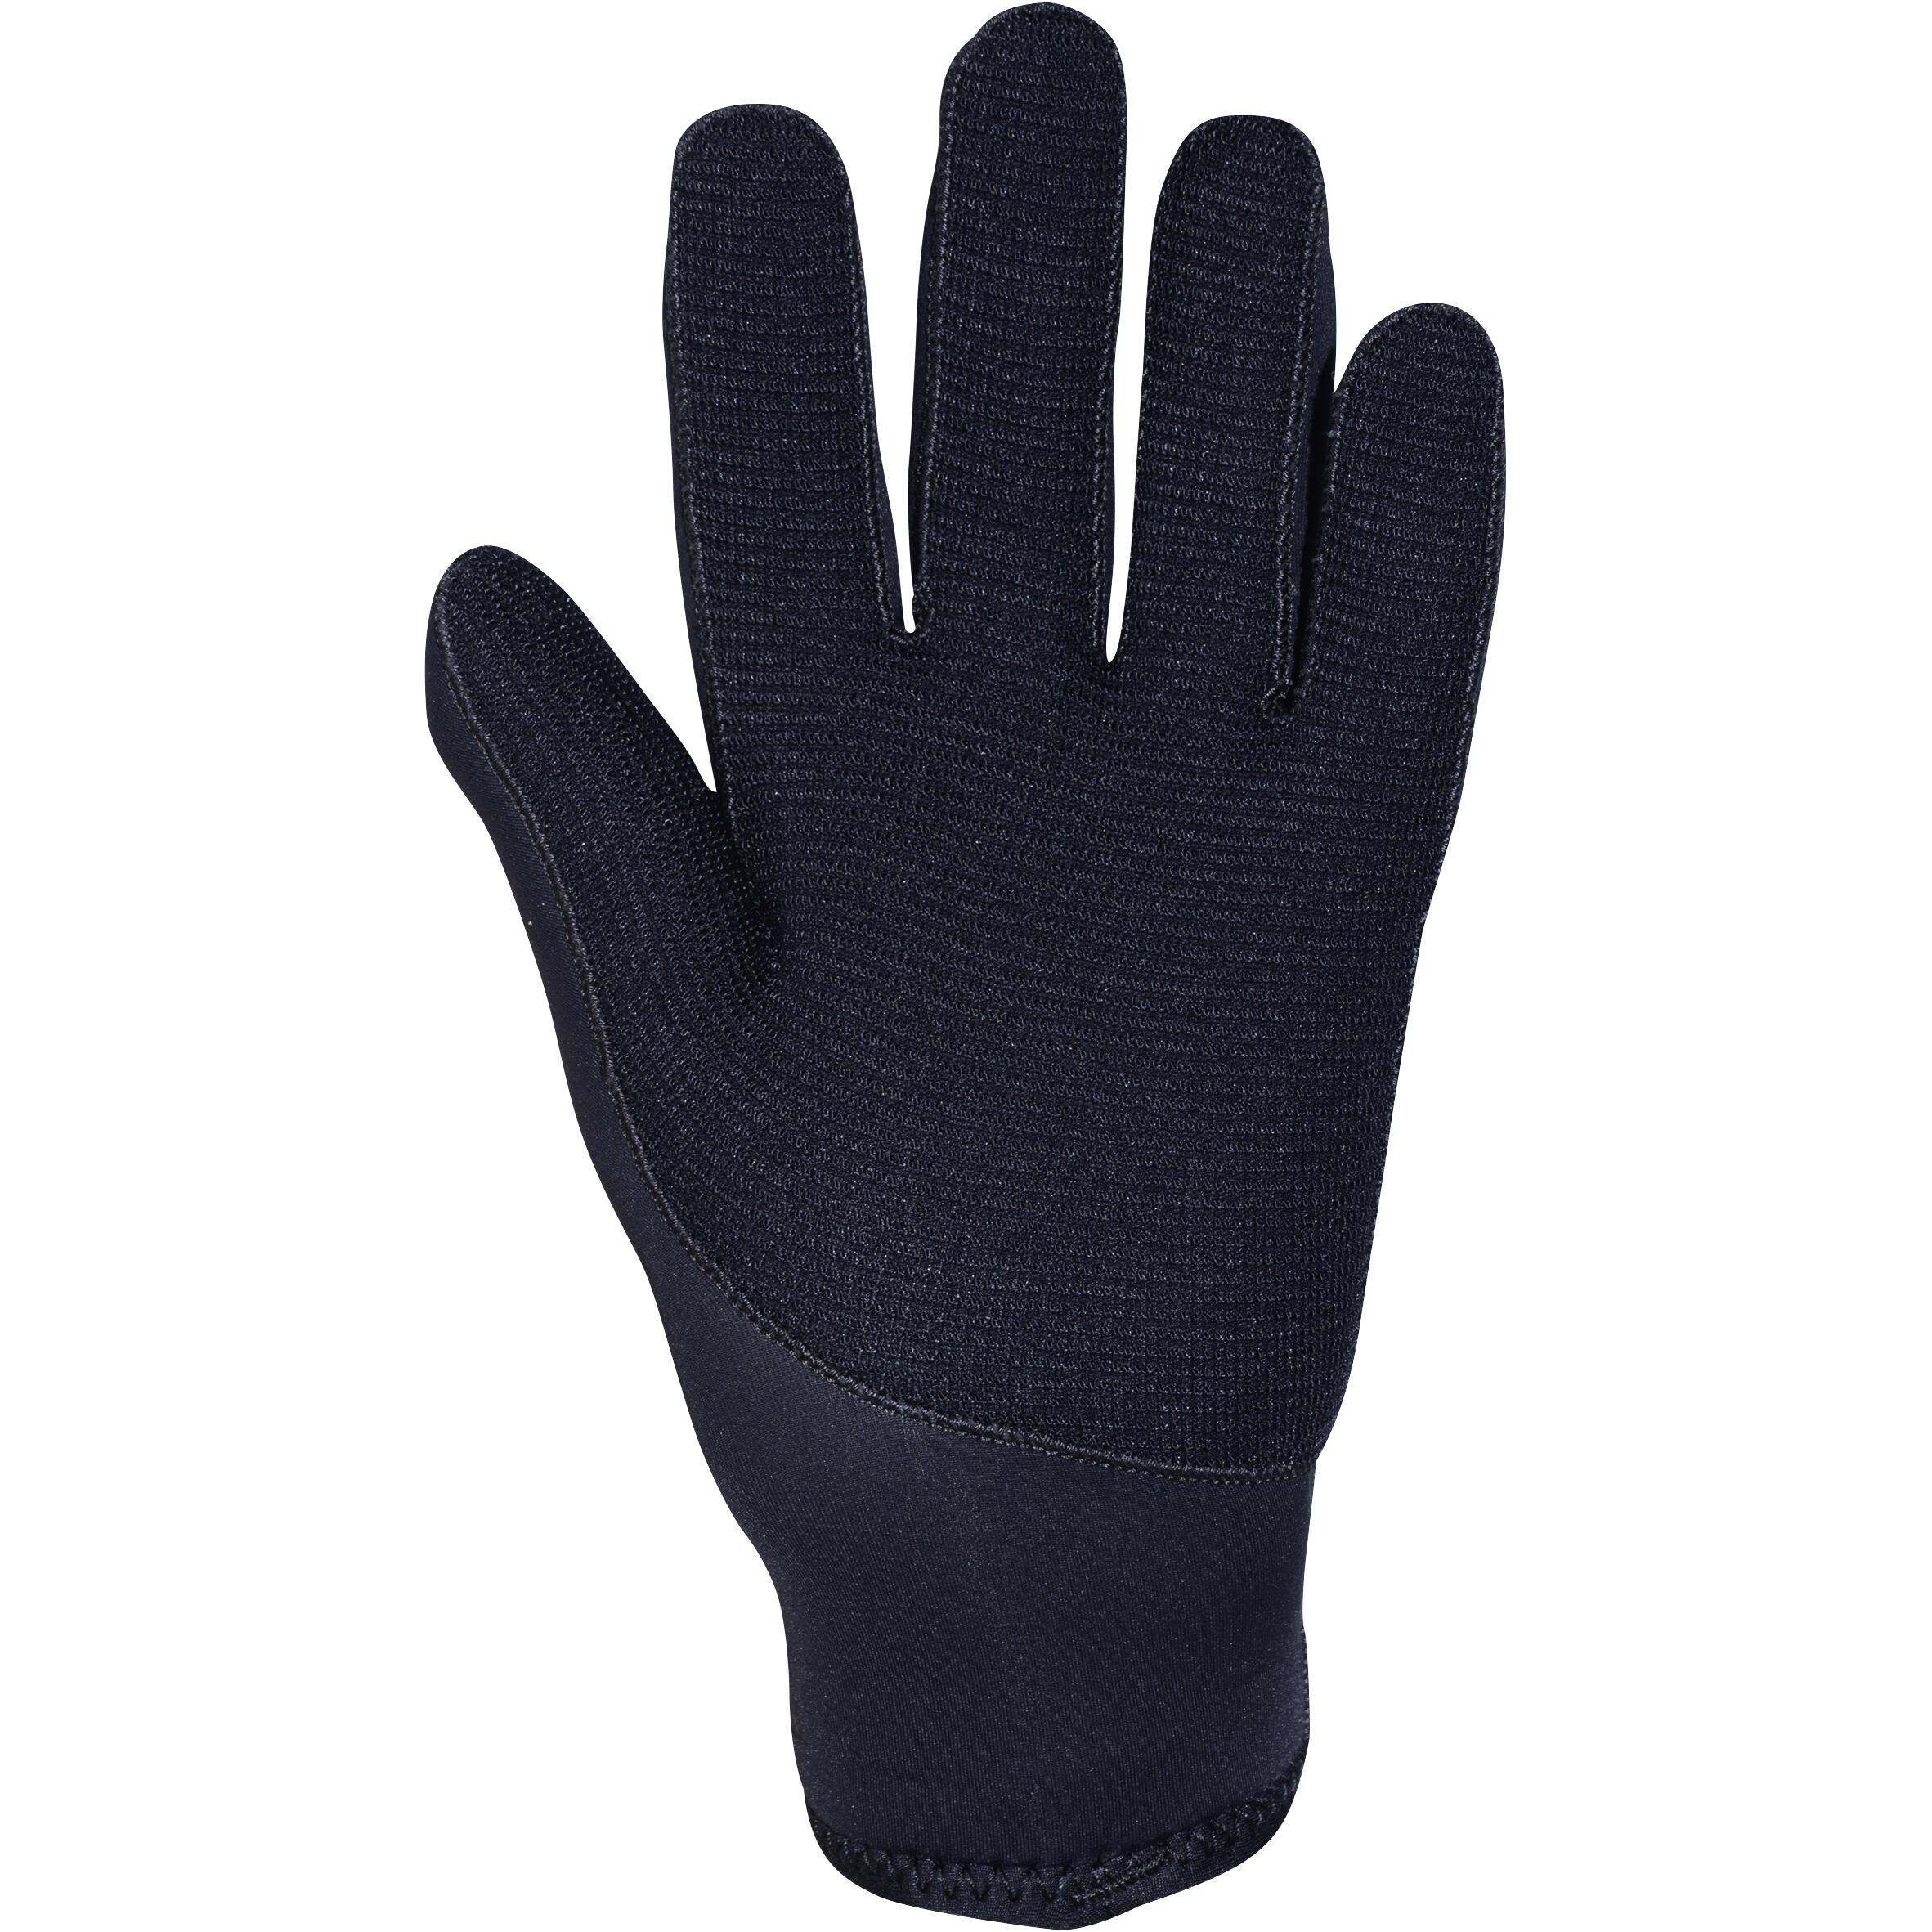 Diving gloves 5 mm neoprene black 3/9